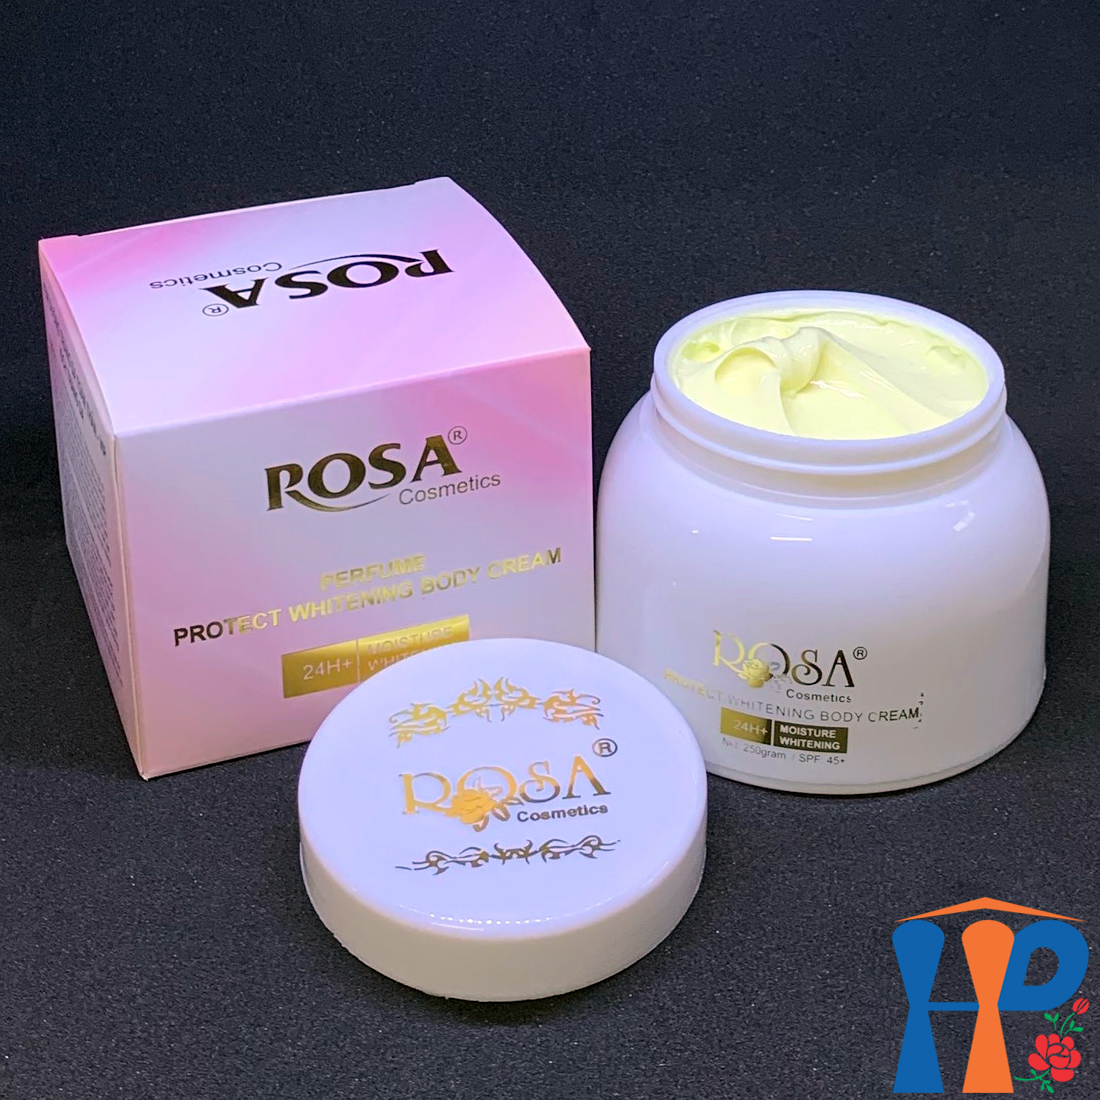 Kem dưỡng thể trắng da hương nước hoa Rosa Perfume Protect Whitening Body Cream 250gr